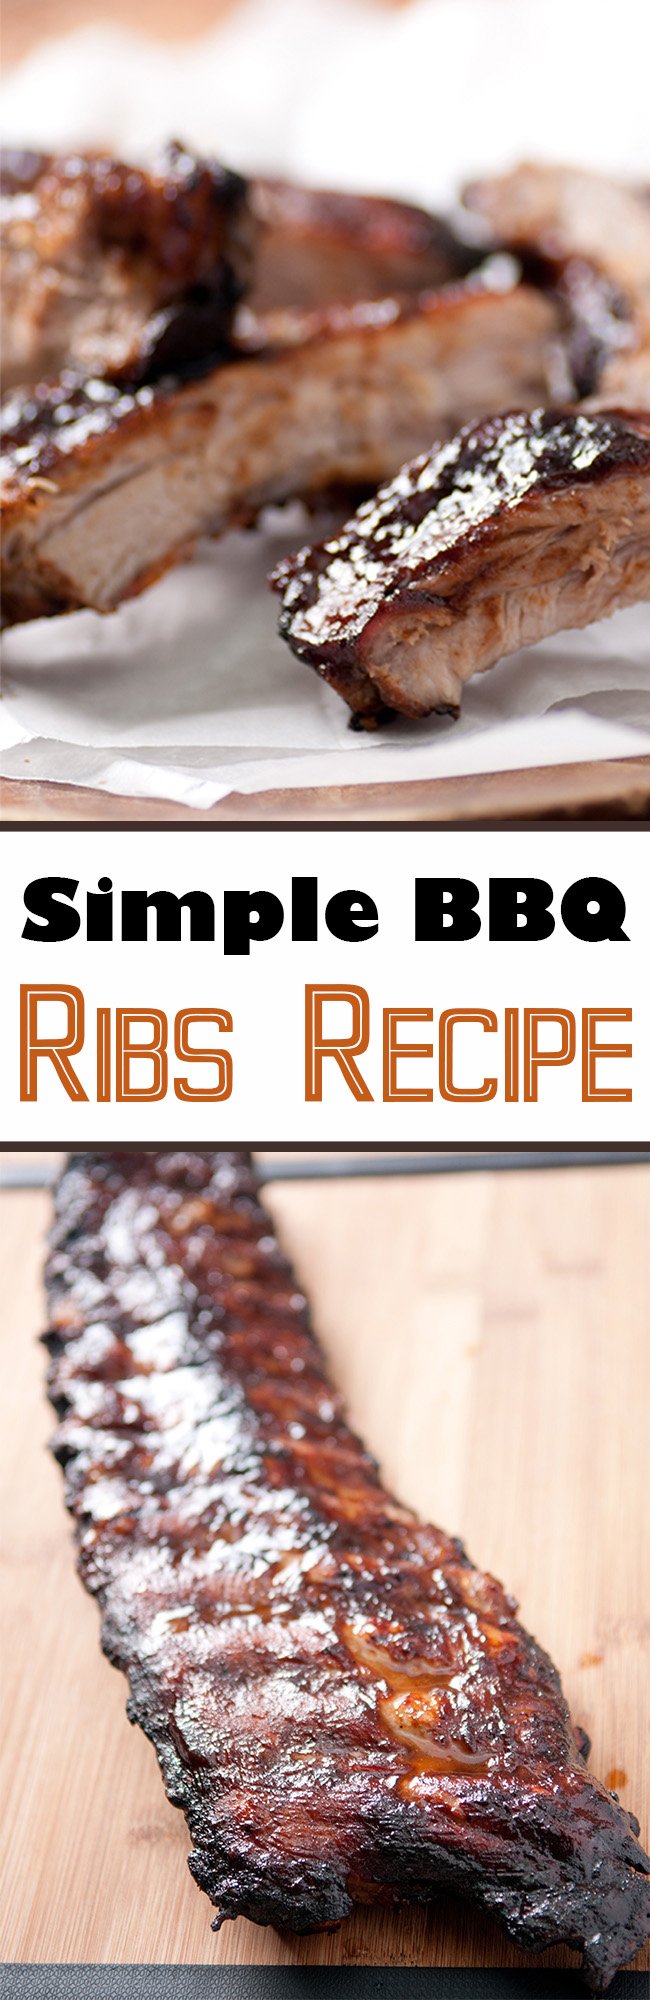 Simple #BBQ Ribs Recipe